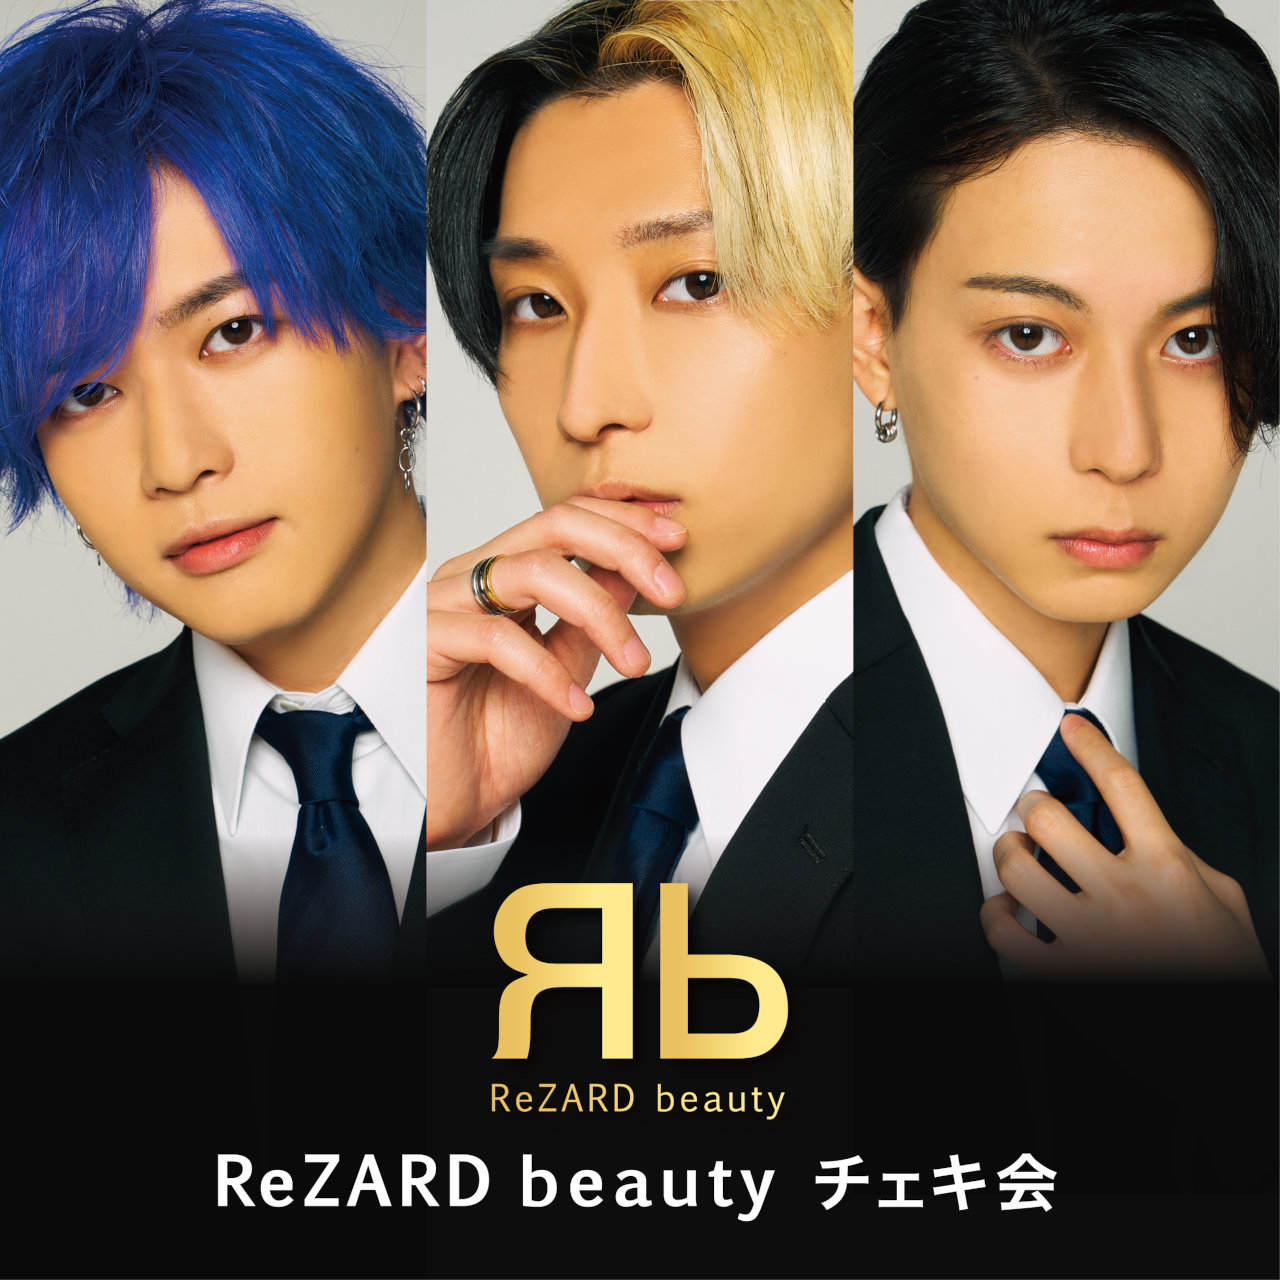 ReZARD beauty チェキ会 in2023【大阪 2/26】